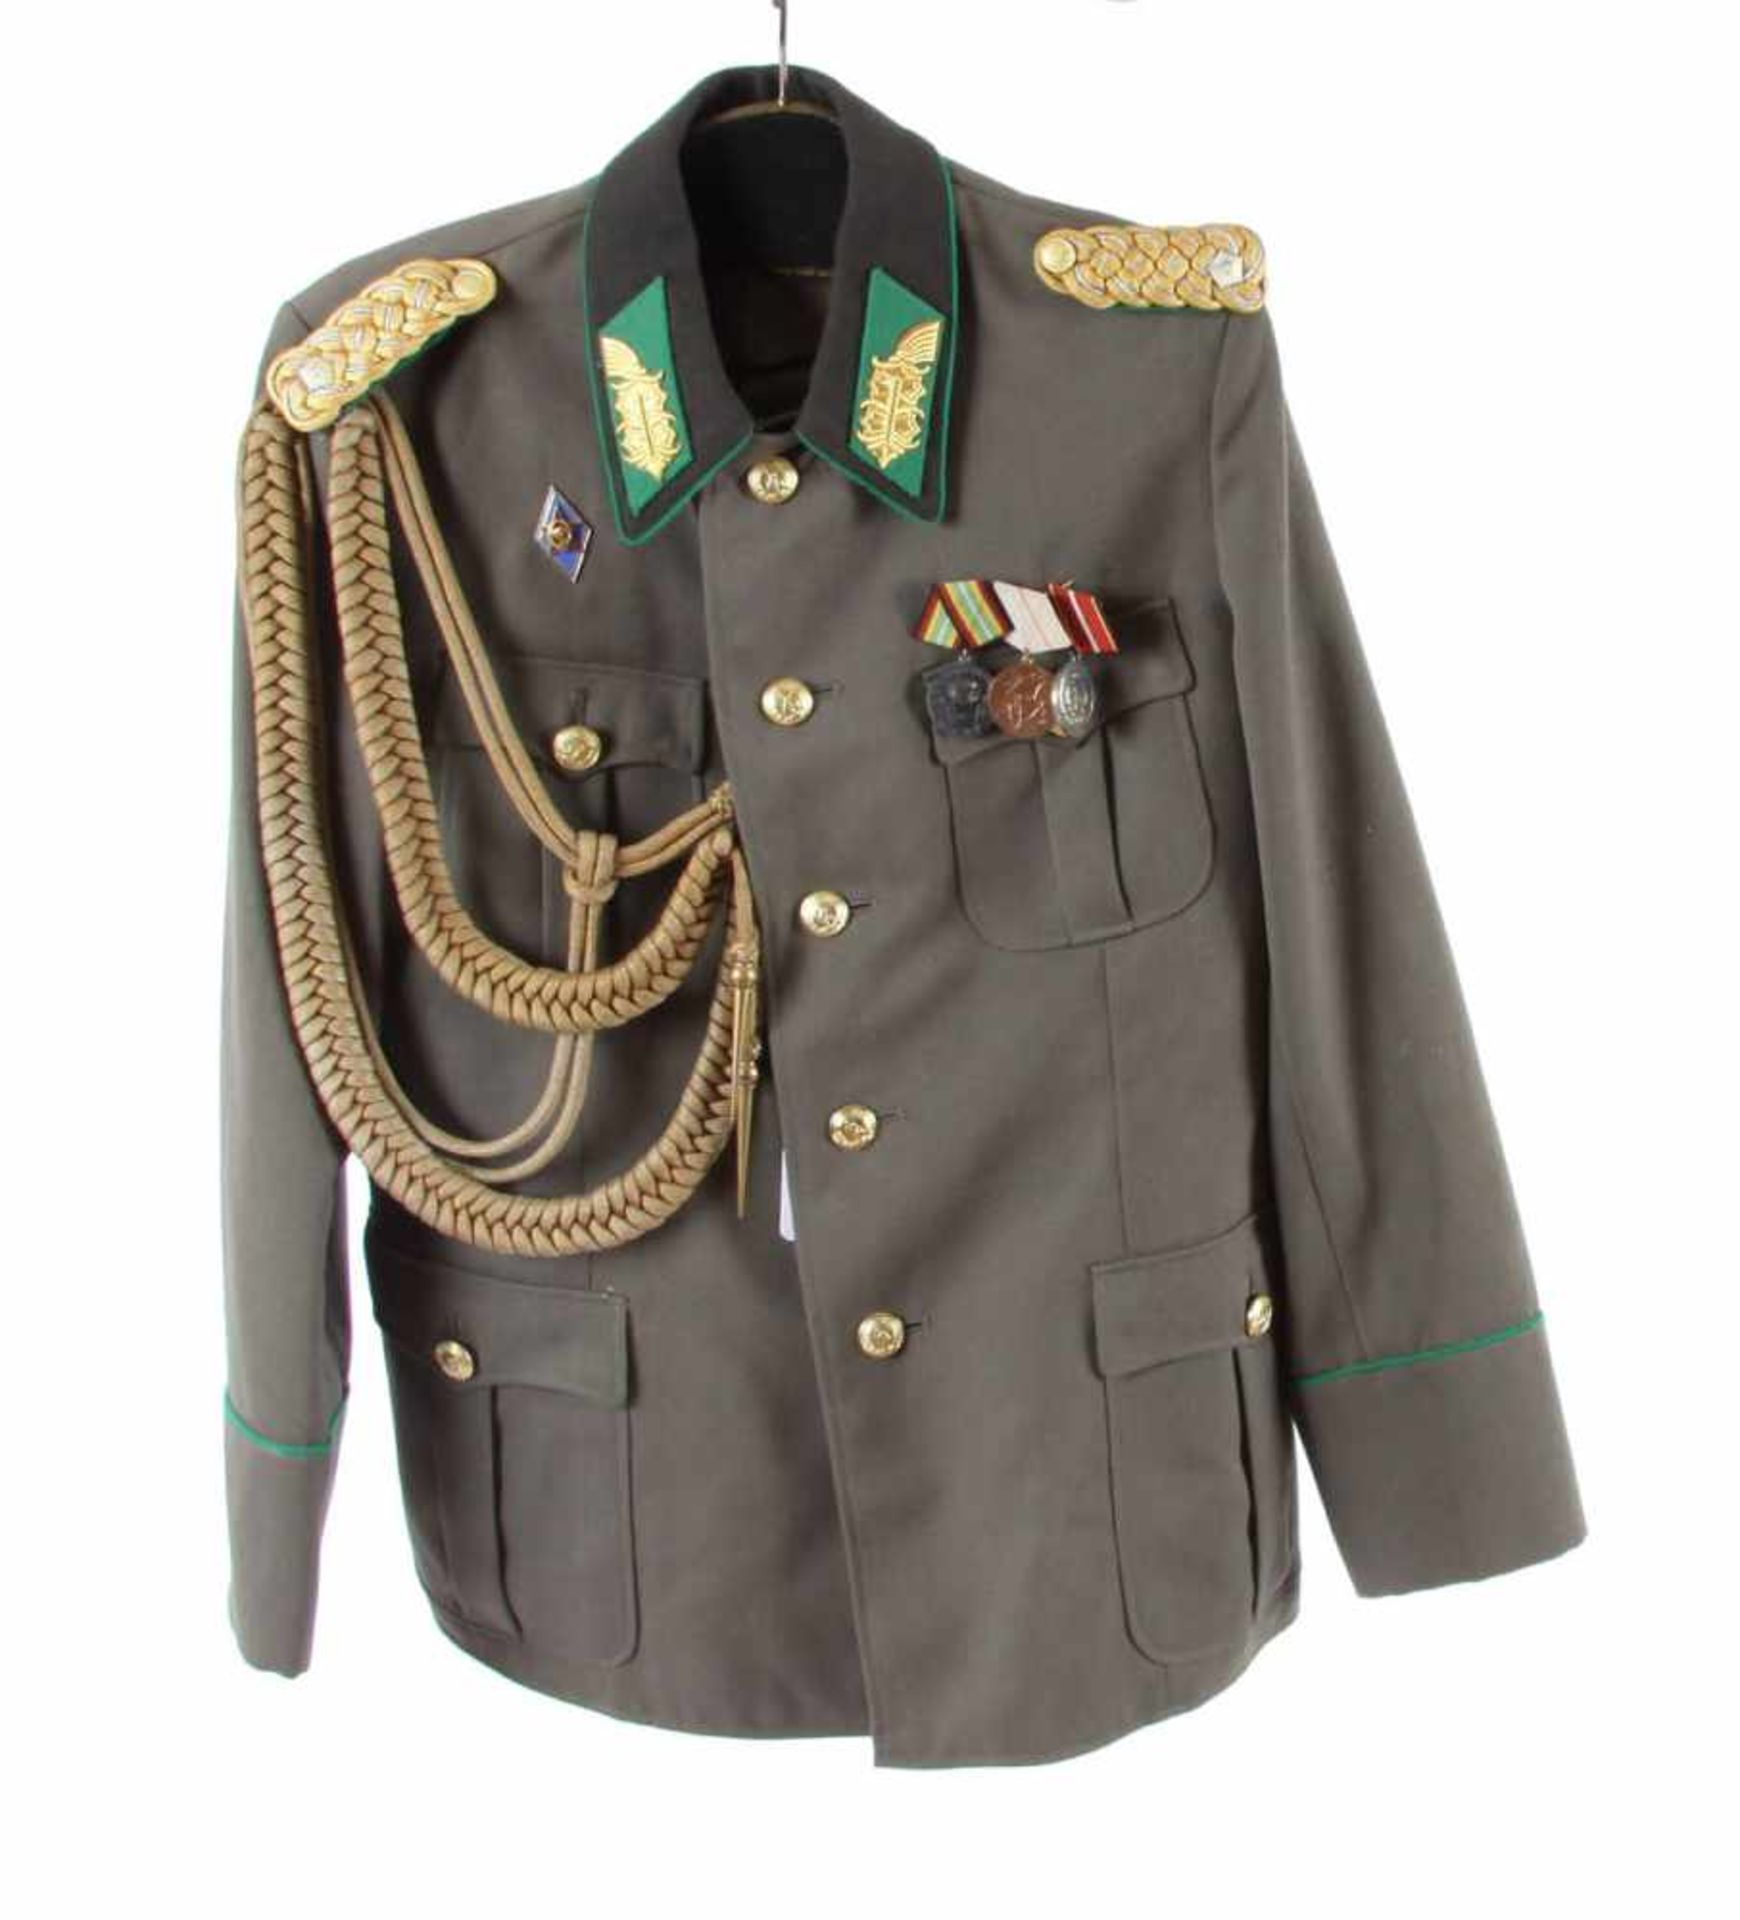 DDR General Uniformjacke mit Orden Rechte Seite mit sowjetischem Akademie Abzeichen, links 3 DDR